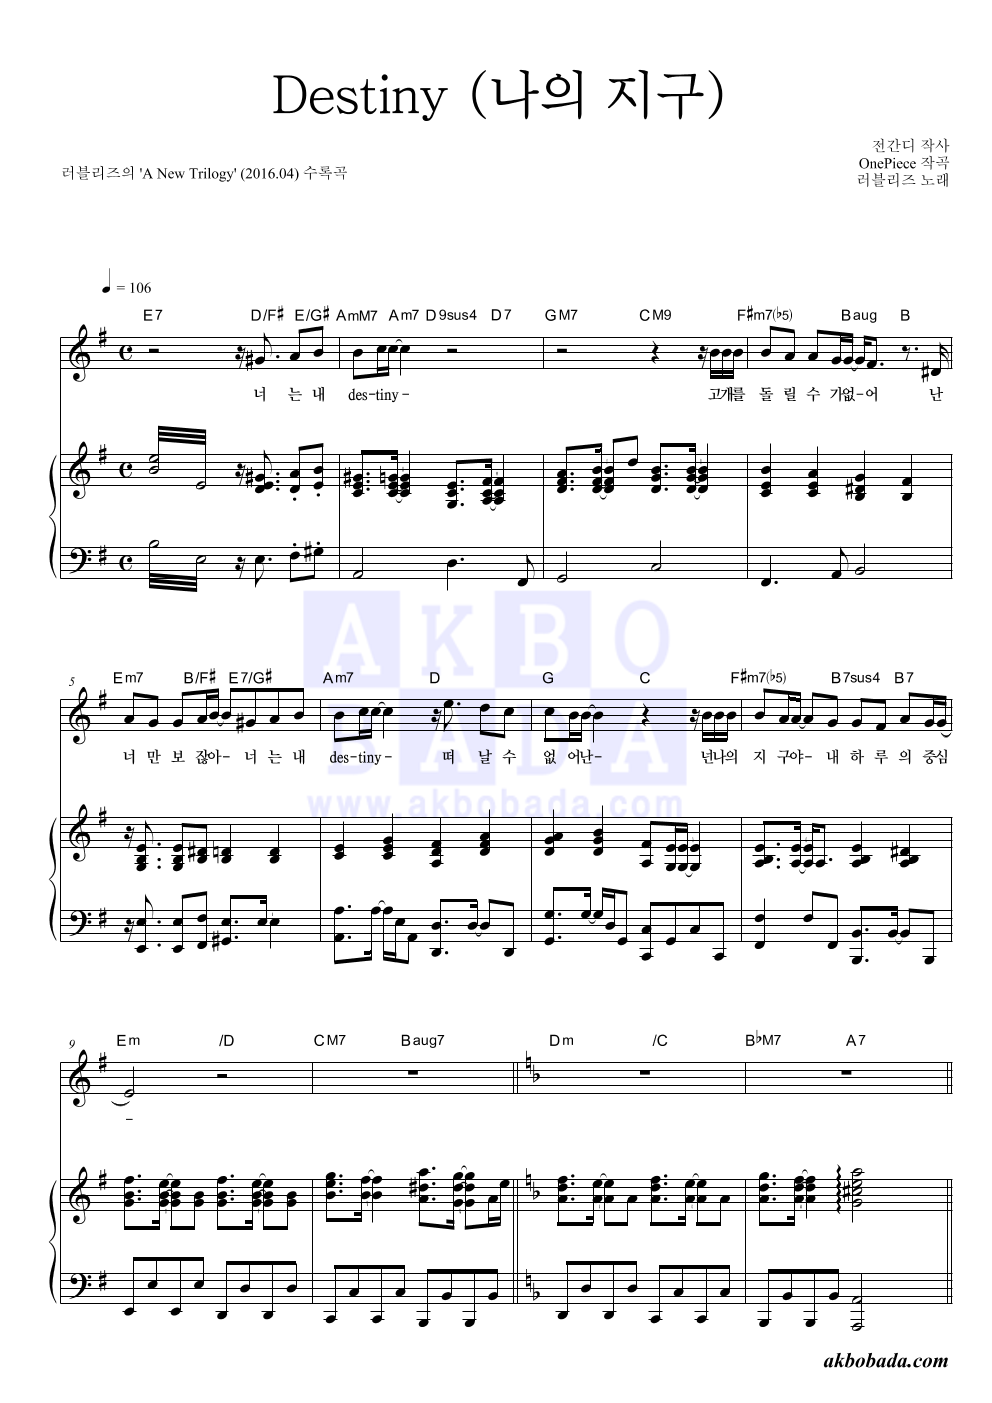 러블리즈 - Destiny (나의 지구) 피아노 3단 악보 